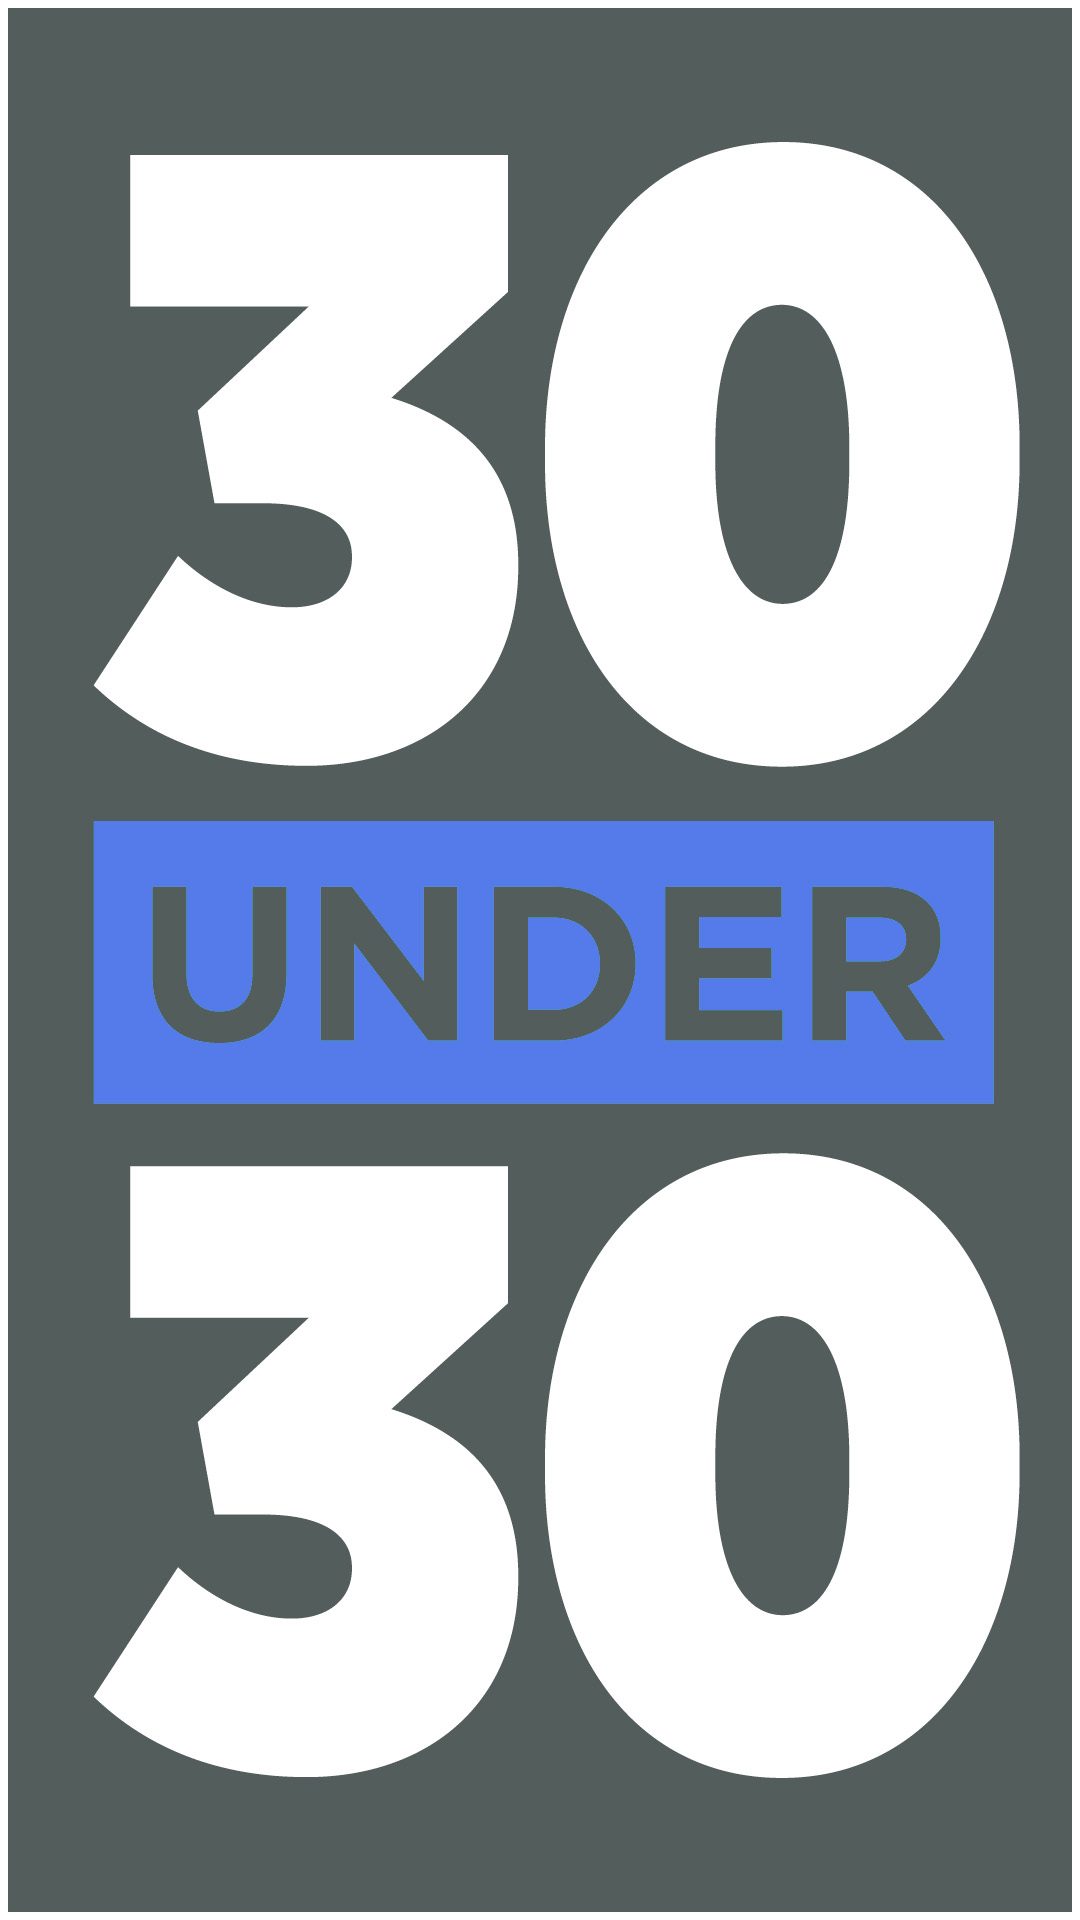 30 Under 30 logo